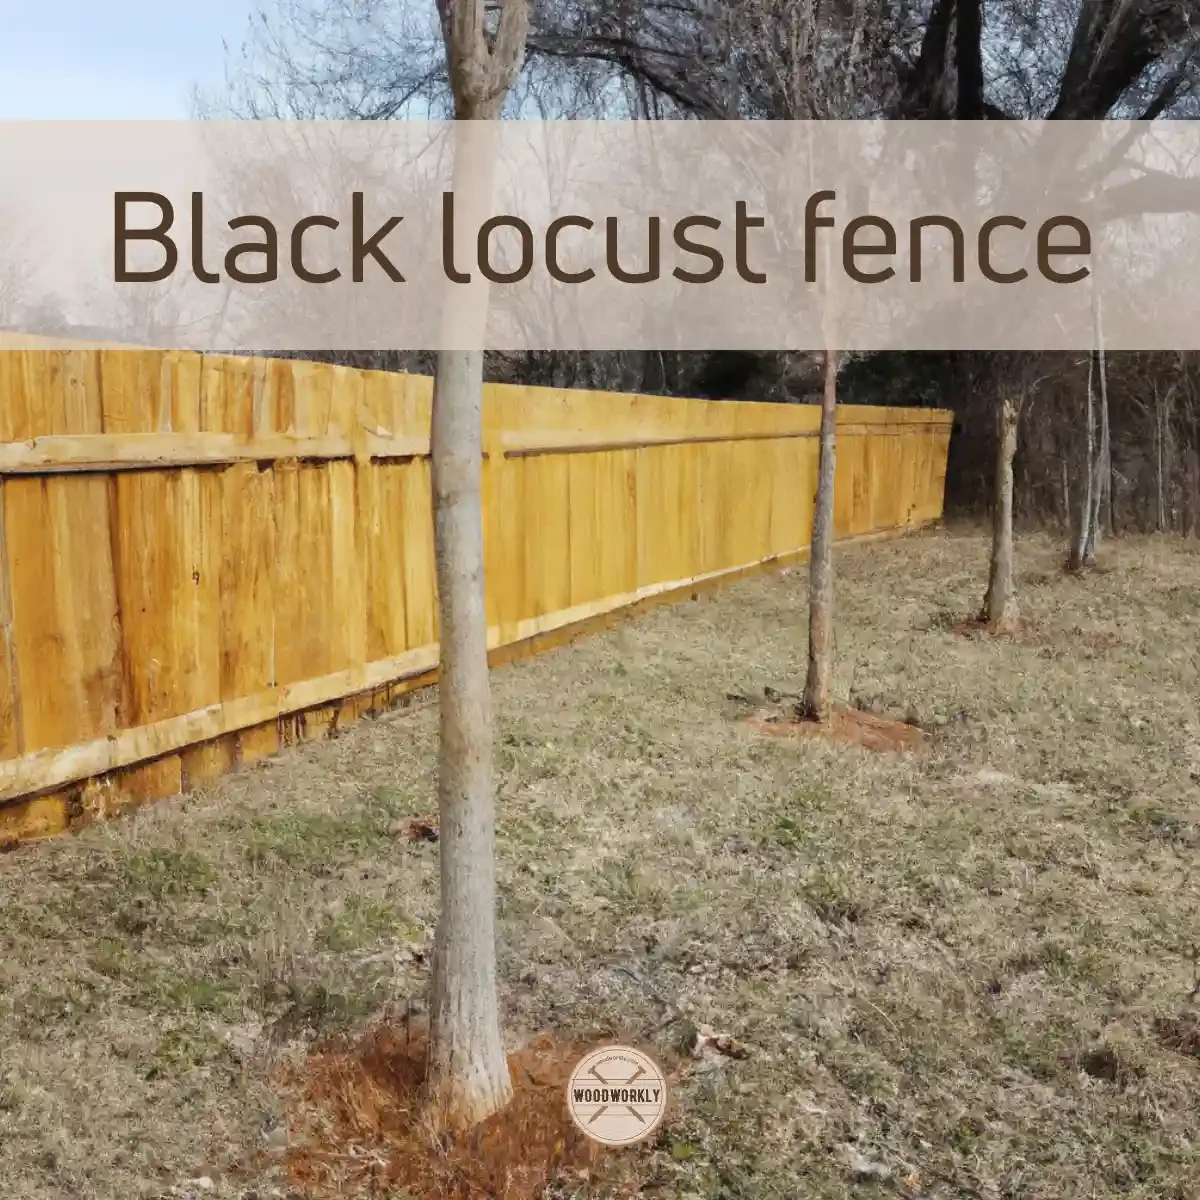 Black locust fence